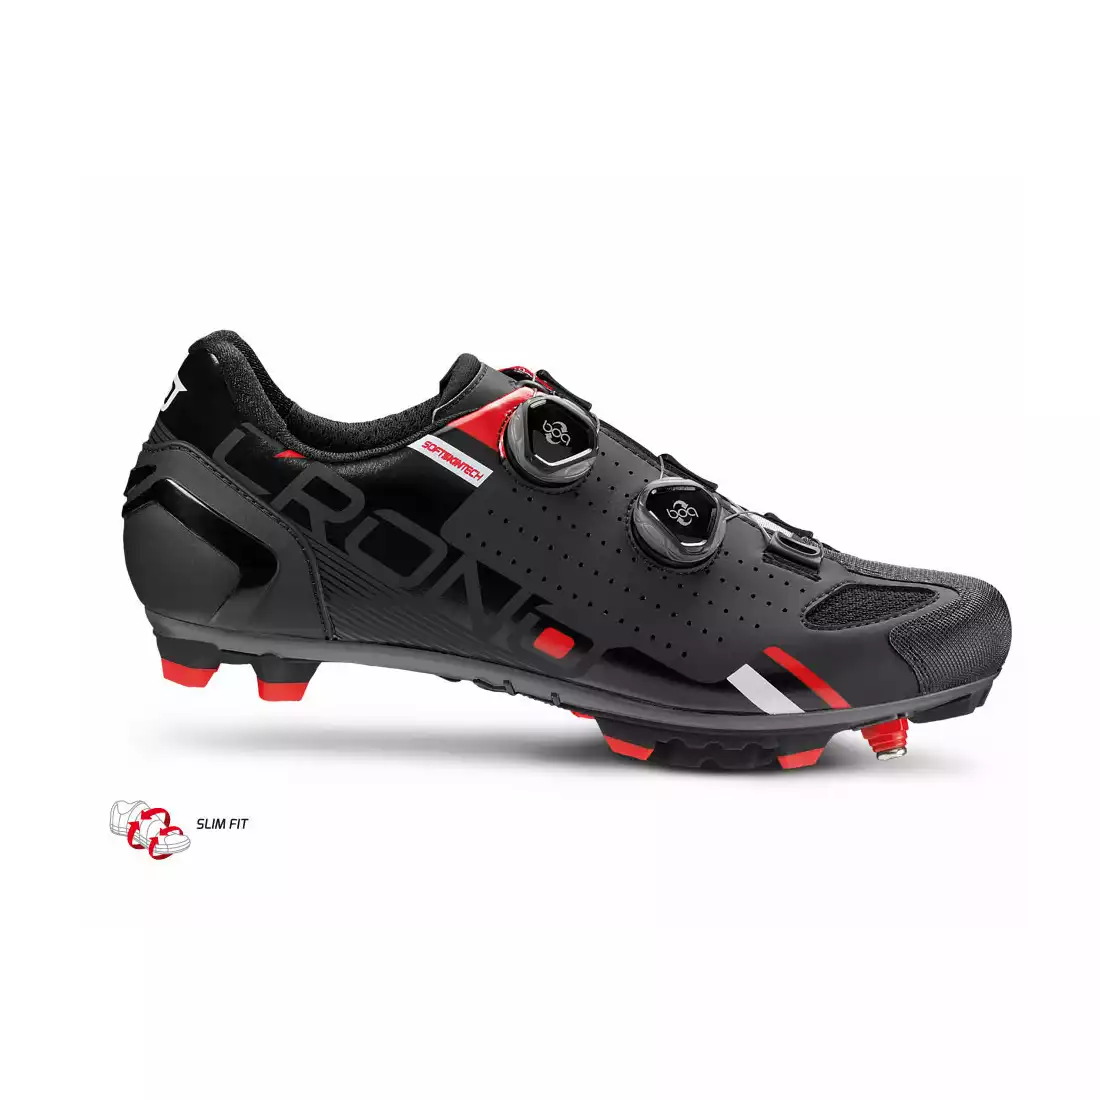 CRONO CX2 Nylon męskie buty rowerowe MTB, czarne